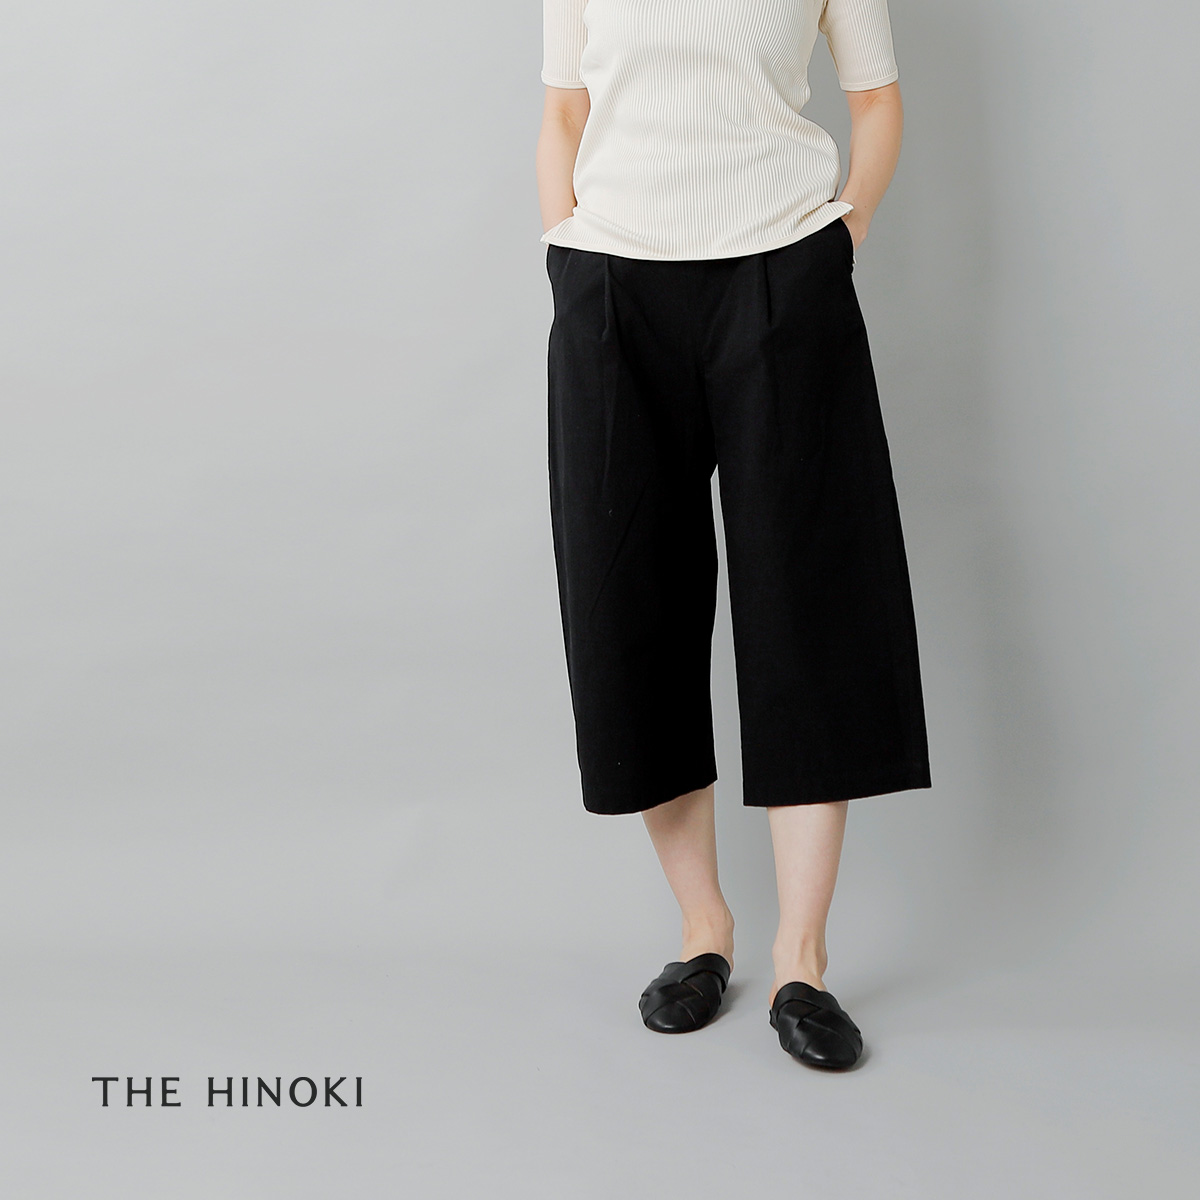 THE HINOKI(ザ ヒノキ)コットン馬布OSFAワイドhalfパンツ th20s-10【サイズ交換初回無料】